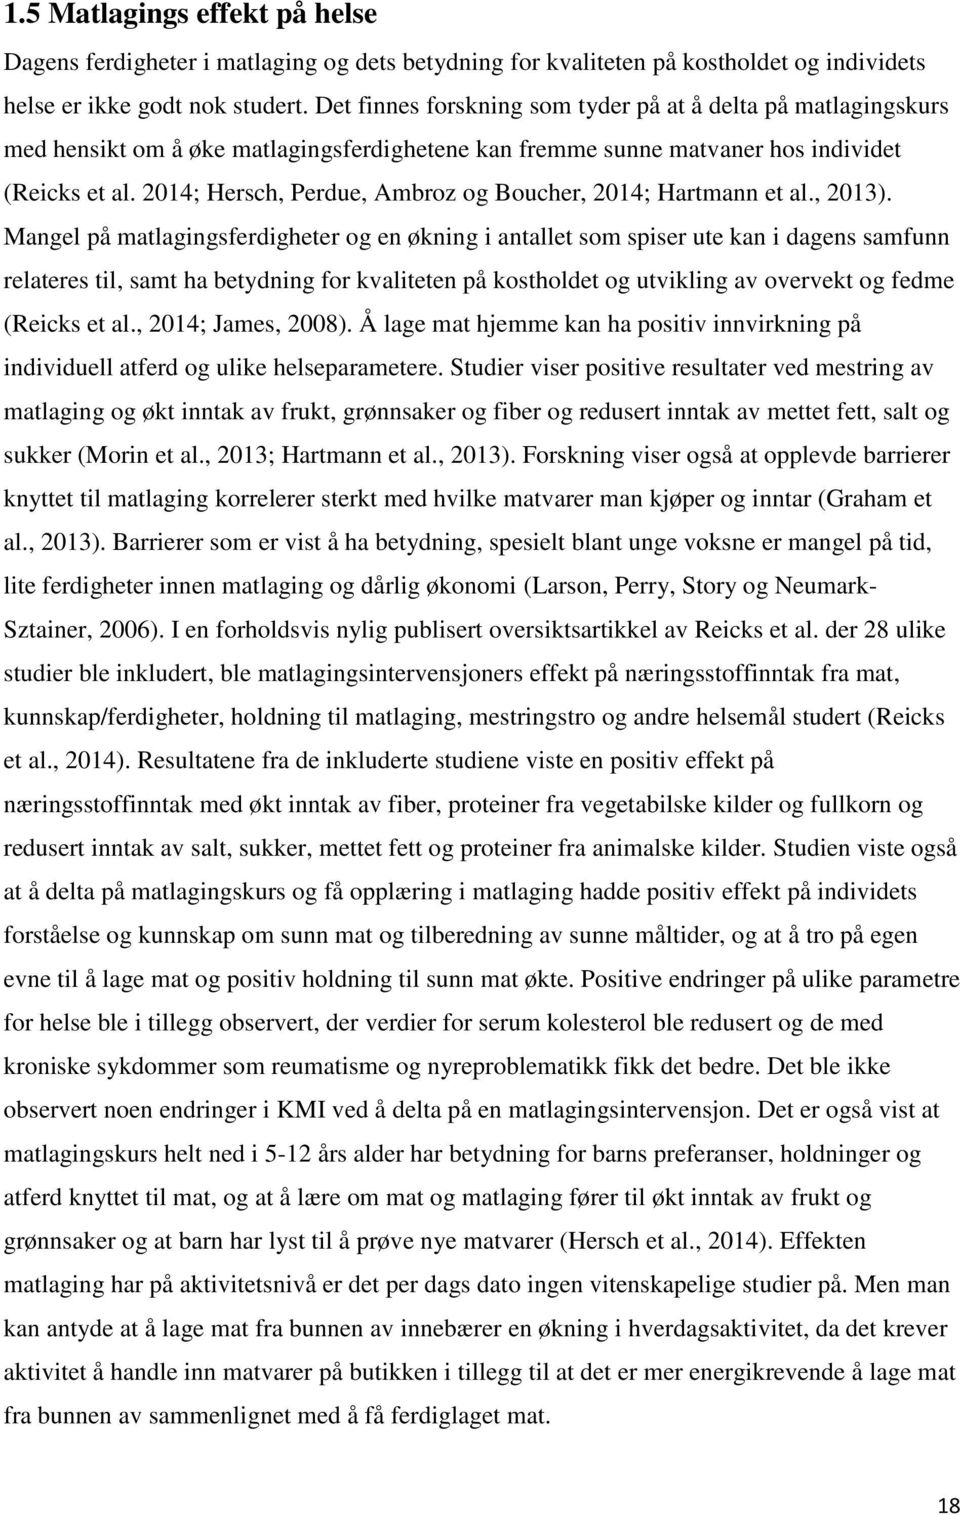 2014; Hersch, Perdue, Ambroz og Boucher, 2014; Hartmann et al., 2013).